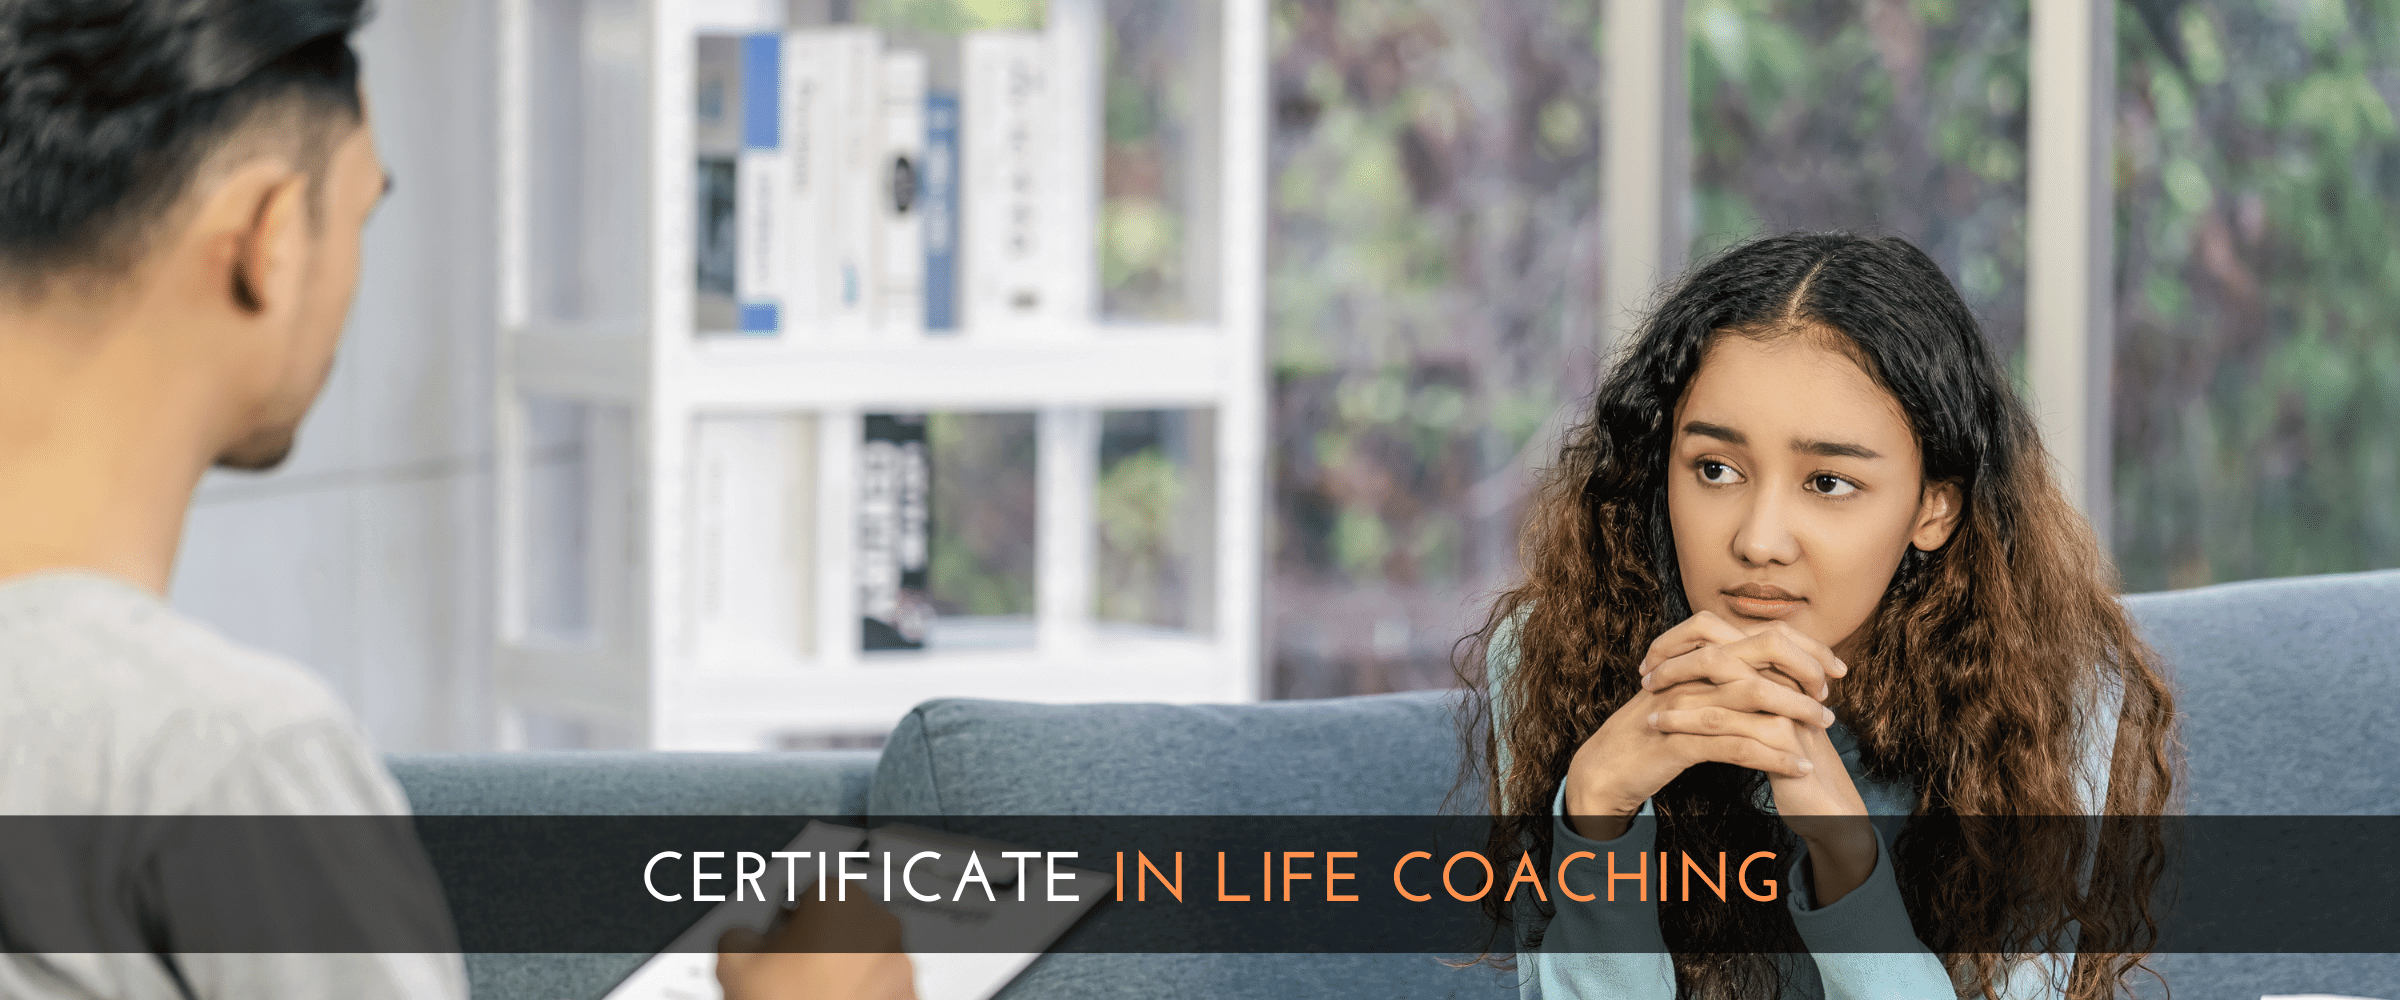 Certificate in Life Coaching